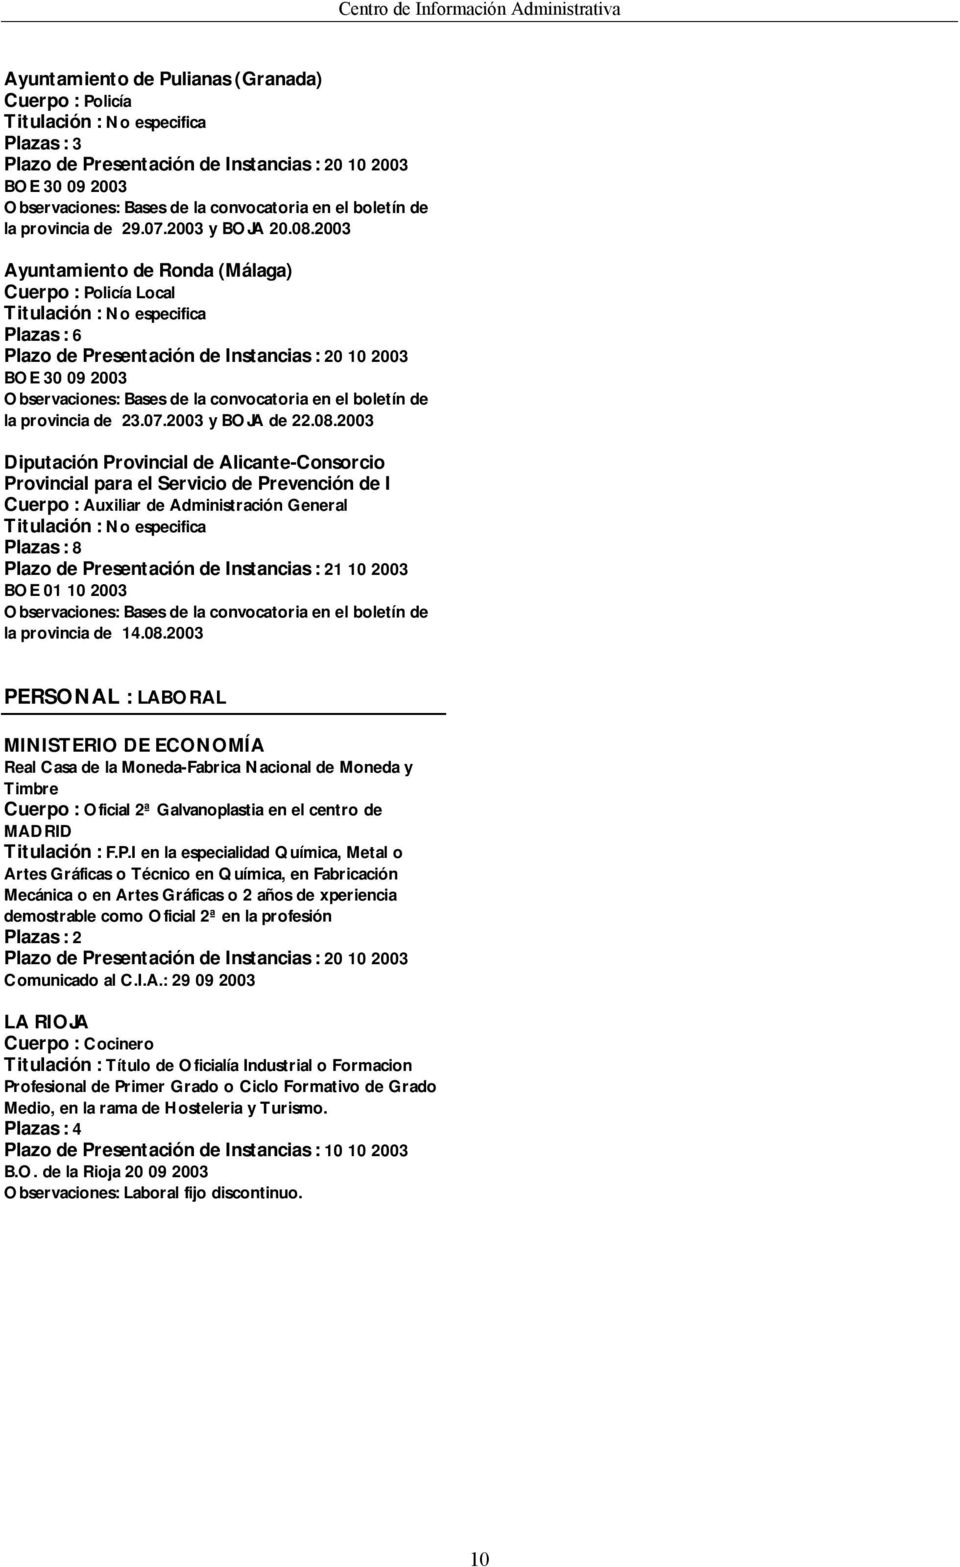 2003 Diputación Provincial de Alicante-Consorcio Provincial para el Servicio de Prevención de I Cuerpo : Auxiliar de Administración General Plazas : 8 Plazo de Presentación de Instancias : 21 10 2003